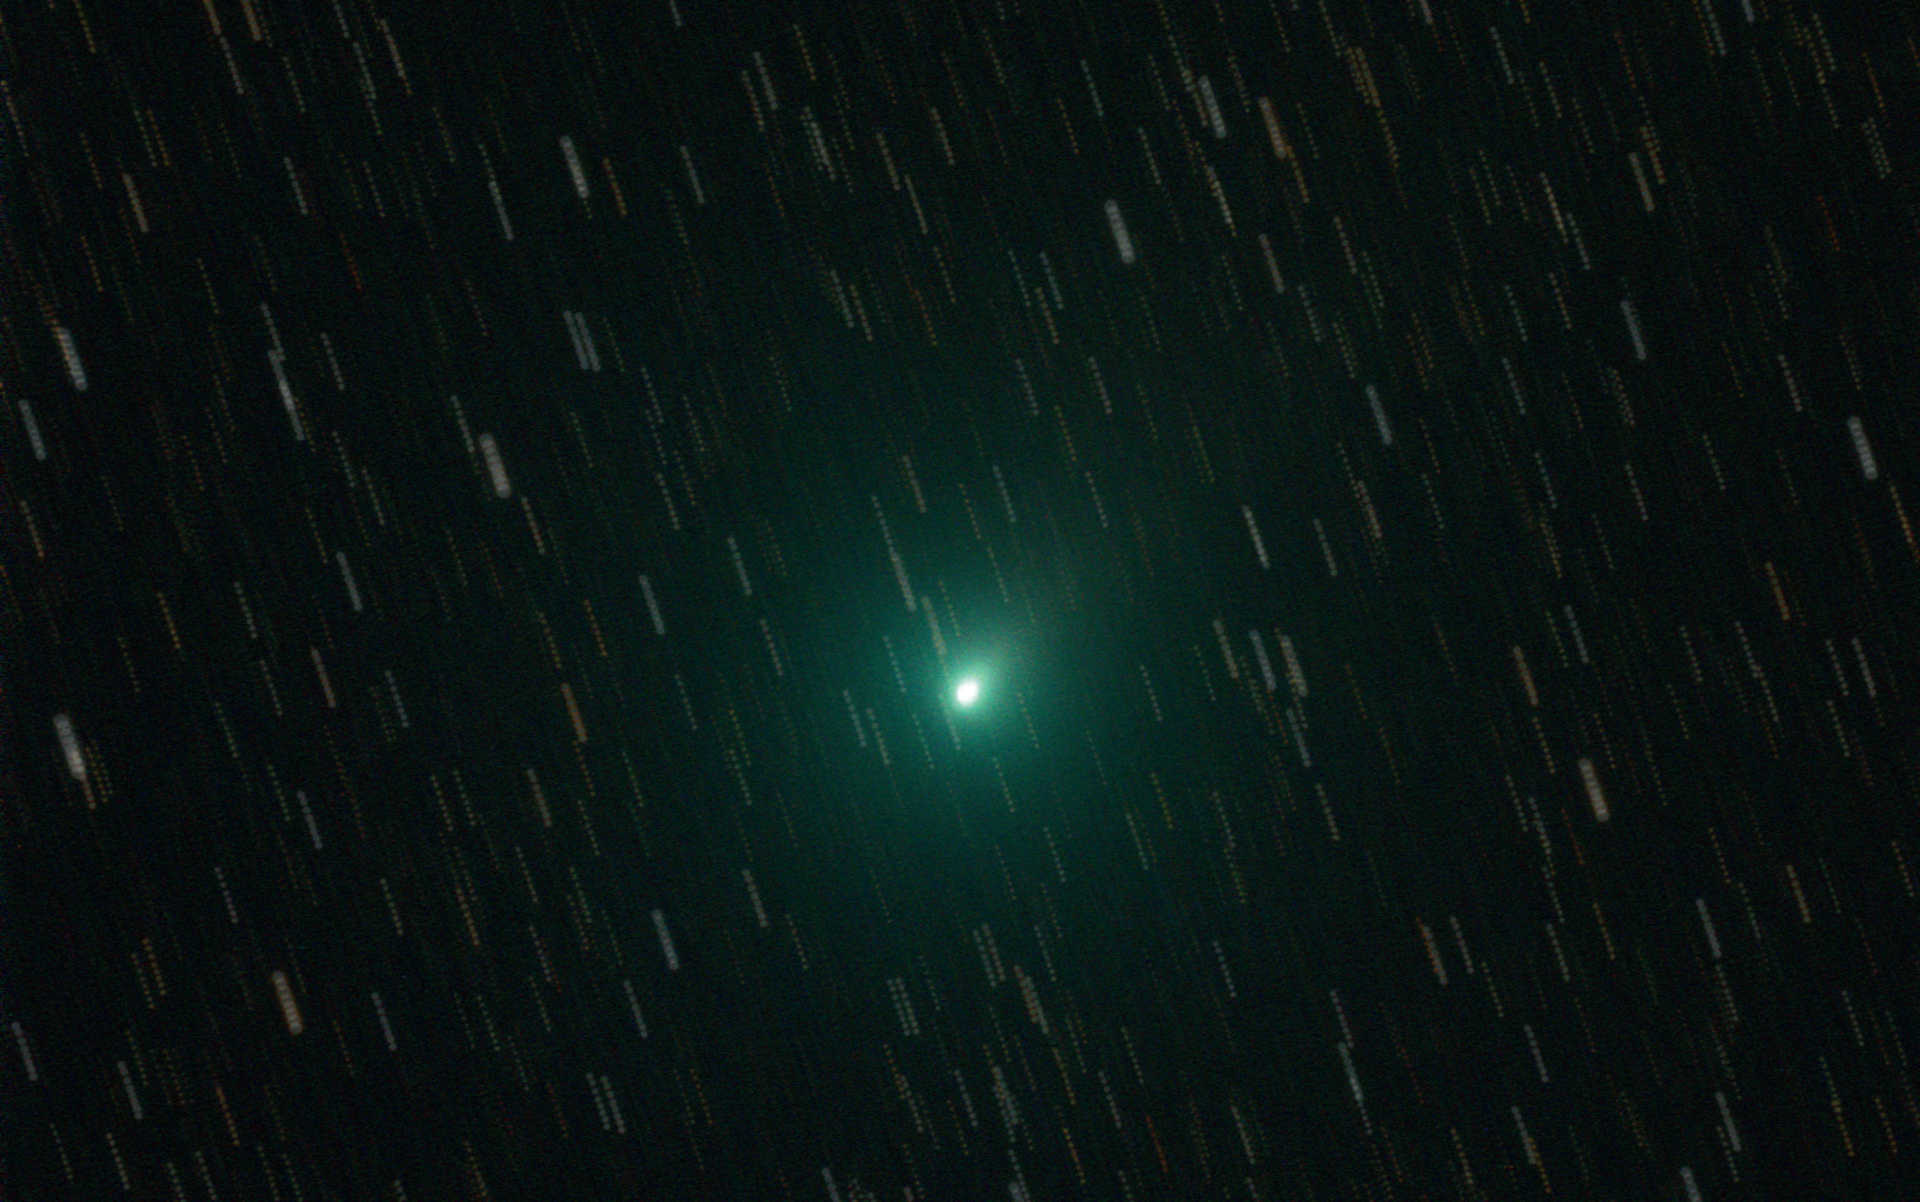 Summenaufnahme des Komet 103P (Hartley). Bei der Bildbearbeitung hat man
zwei Möglichkeiten: Entweder werden die Einzelaufnahmen auf den Kometen hin zentriert, sodass
auf dem Summenbild die Sterne als Striche erscheinen und so eindrucksvoll die dynamische Wanderung
eines Kometen vor dem Nachthimmel zeigen